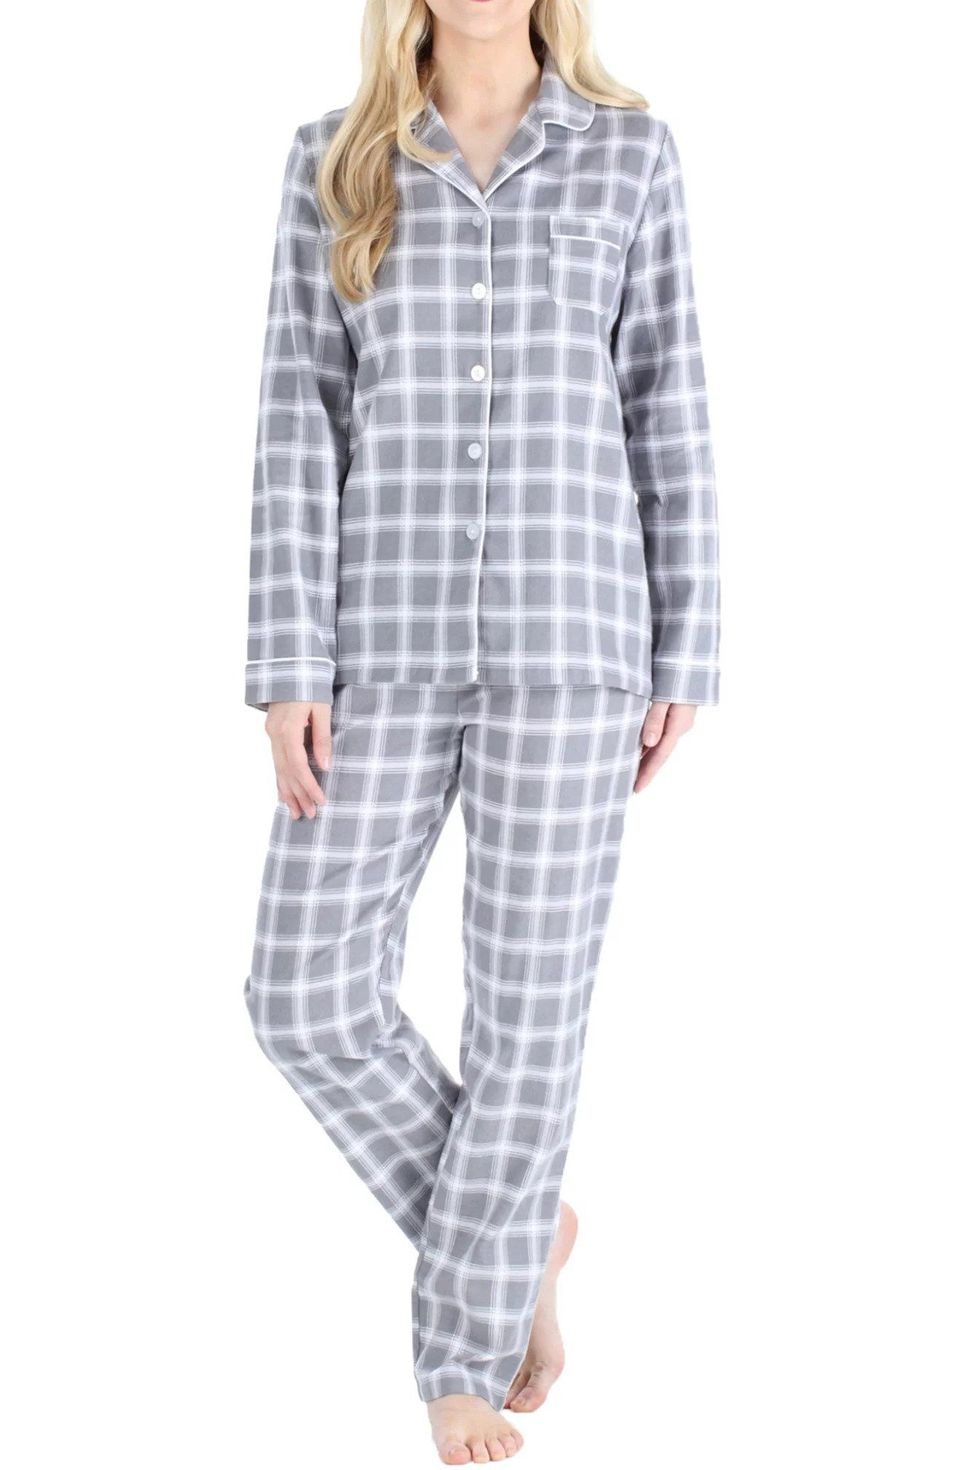 Shop Generic Winter Pajamas Set Women Sleepwear Warm Flannel Long